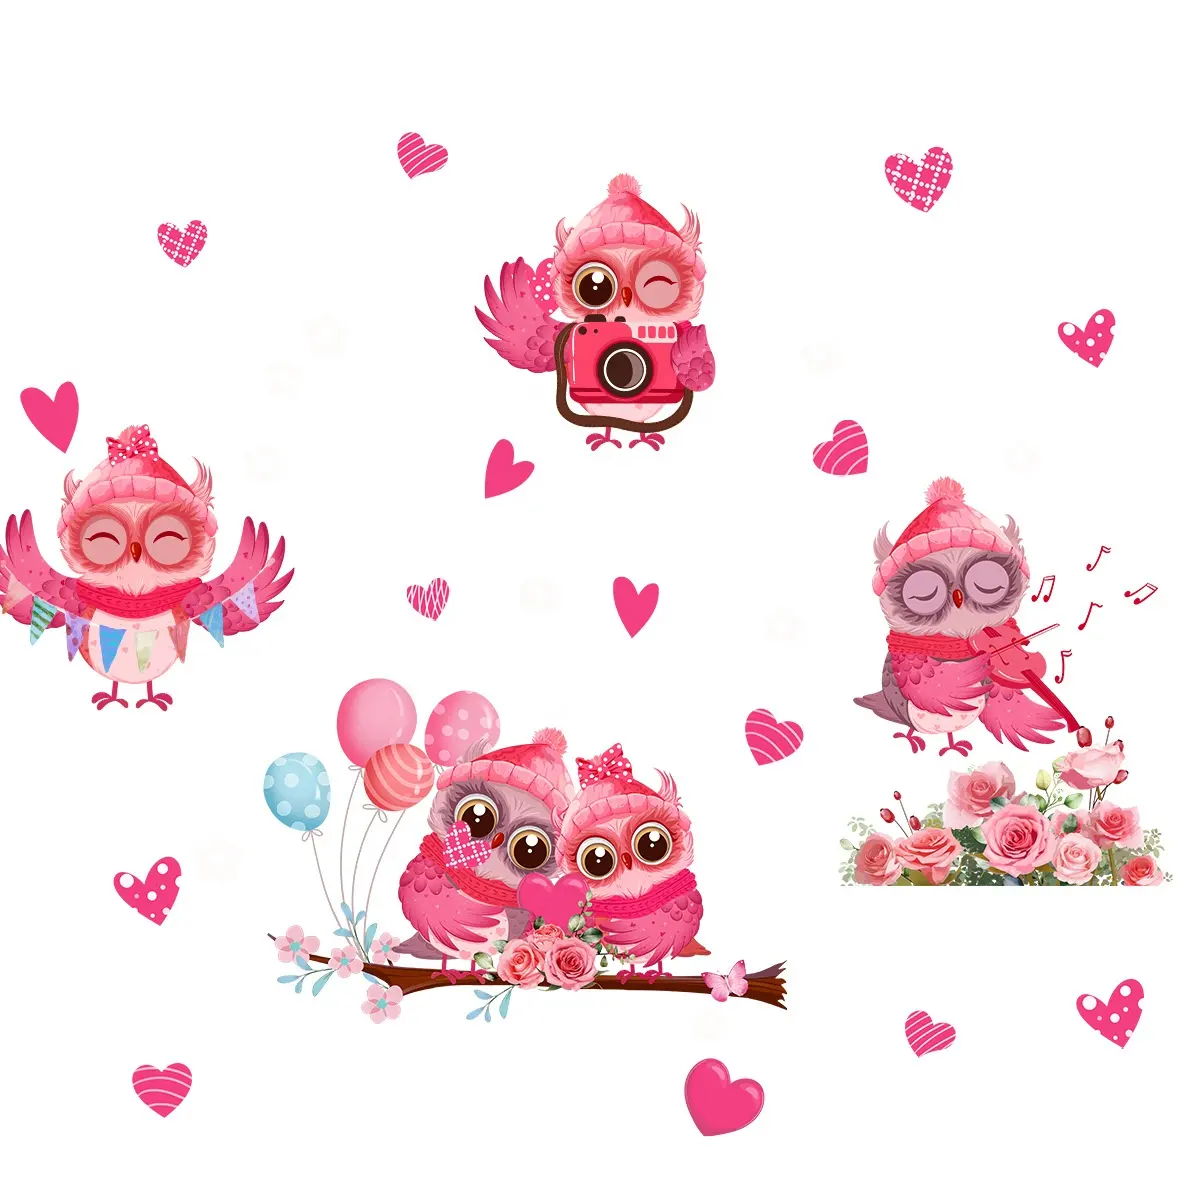 San Valentino romantico rosa cartone animato amore gufo adesivo per finestra vetro elettrostatico decorazione per la casa adesivo carta da parati